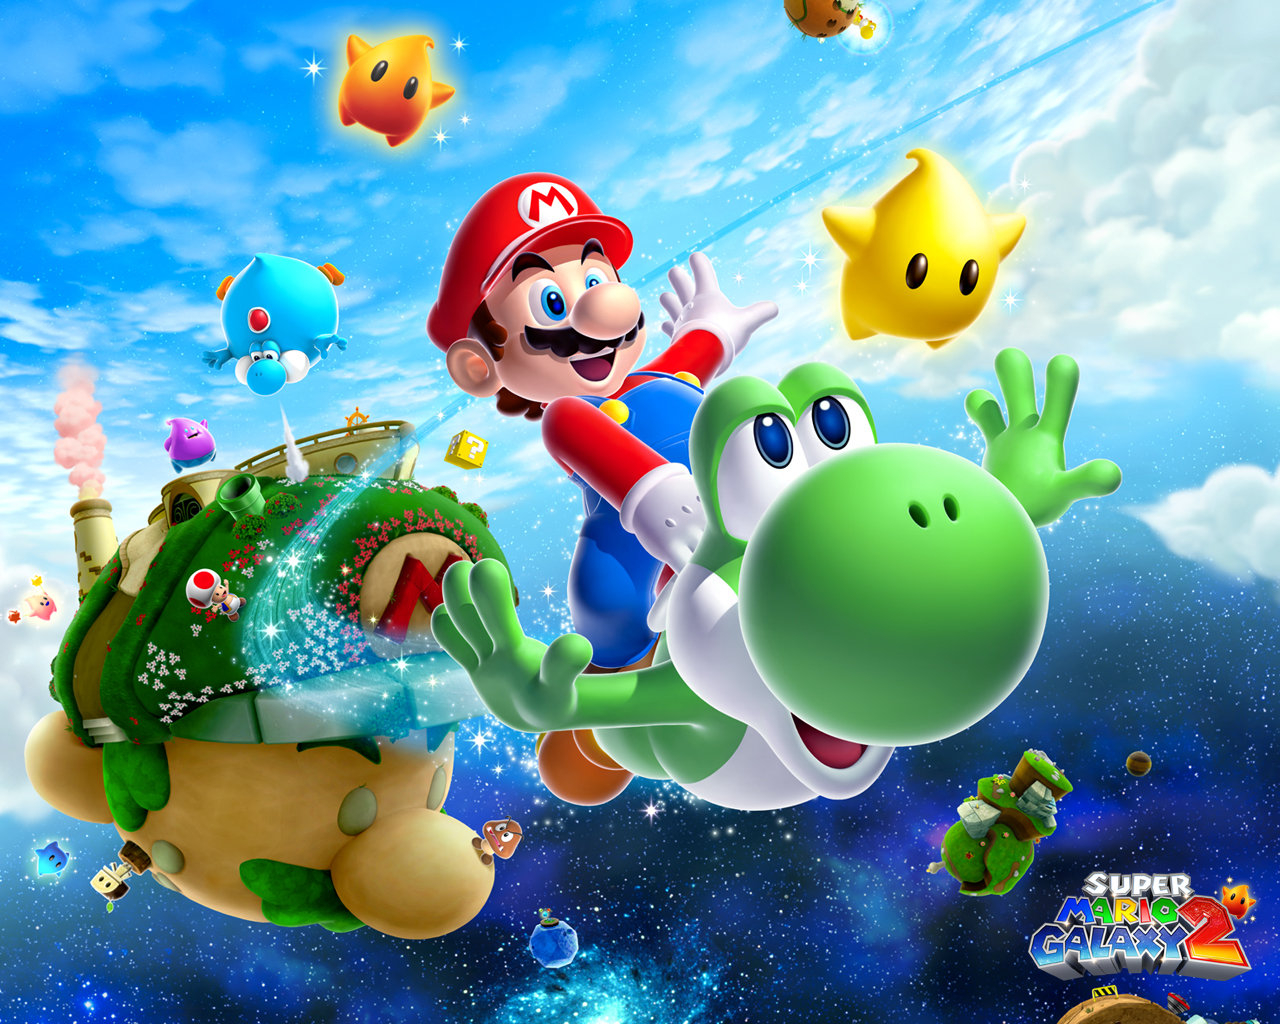 Download - Yoshi Mario Galaxy 2 , HD Wallpaper & Backgrounds